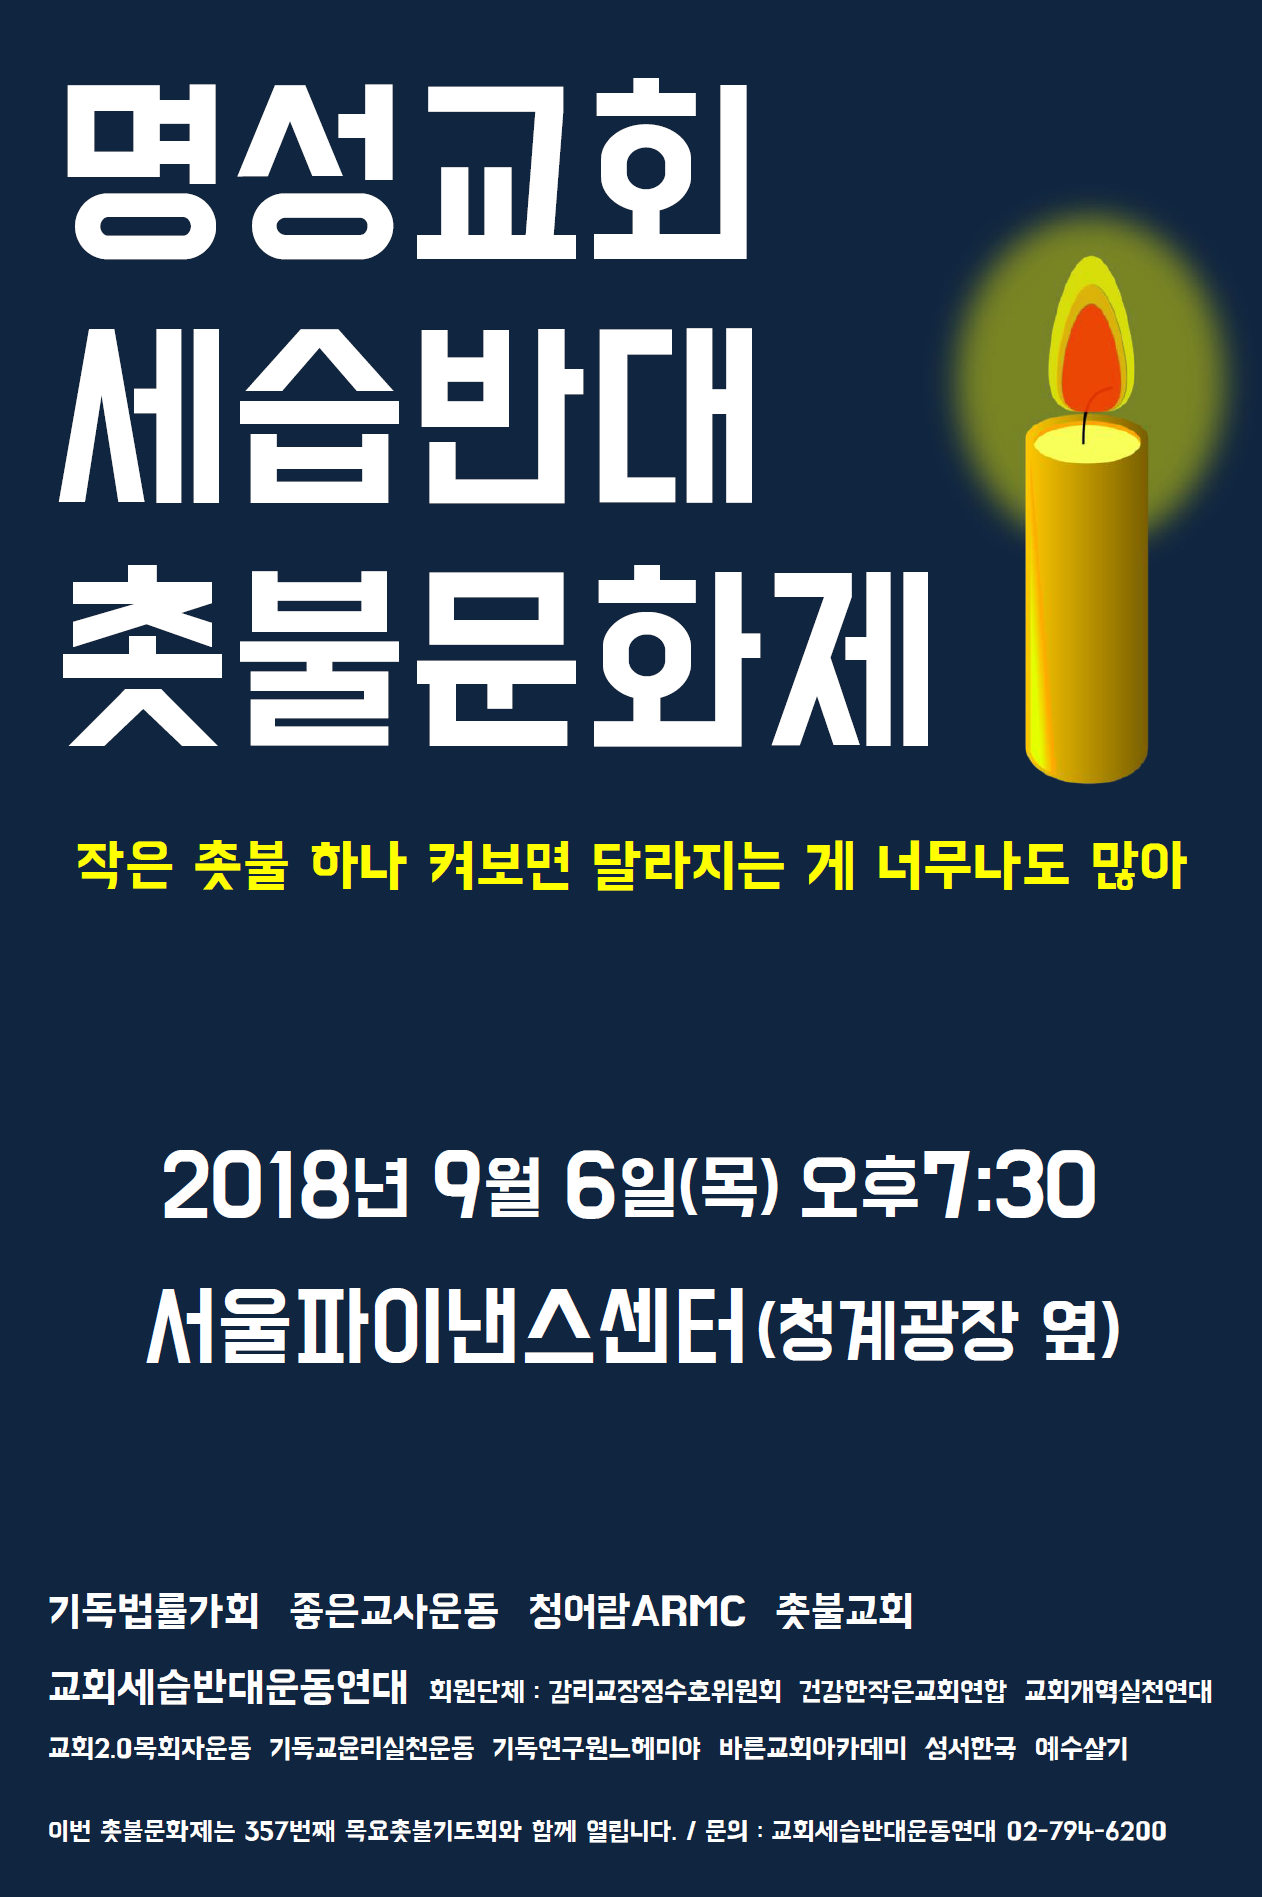 명성세습 촛불문화제 웹자보 2018년 9월 6일 목요일 오후 7시 30분, 청계광장 옆 서울파이낸스센터 앞